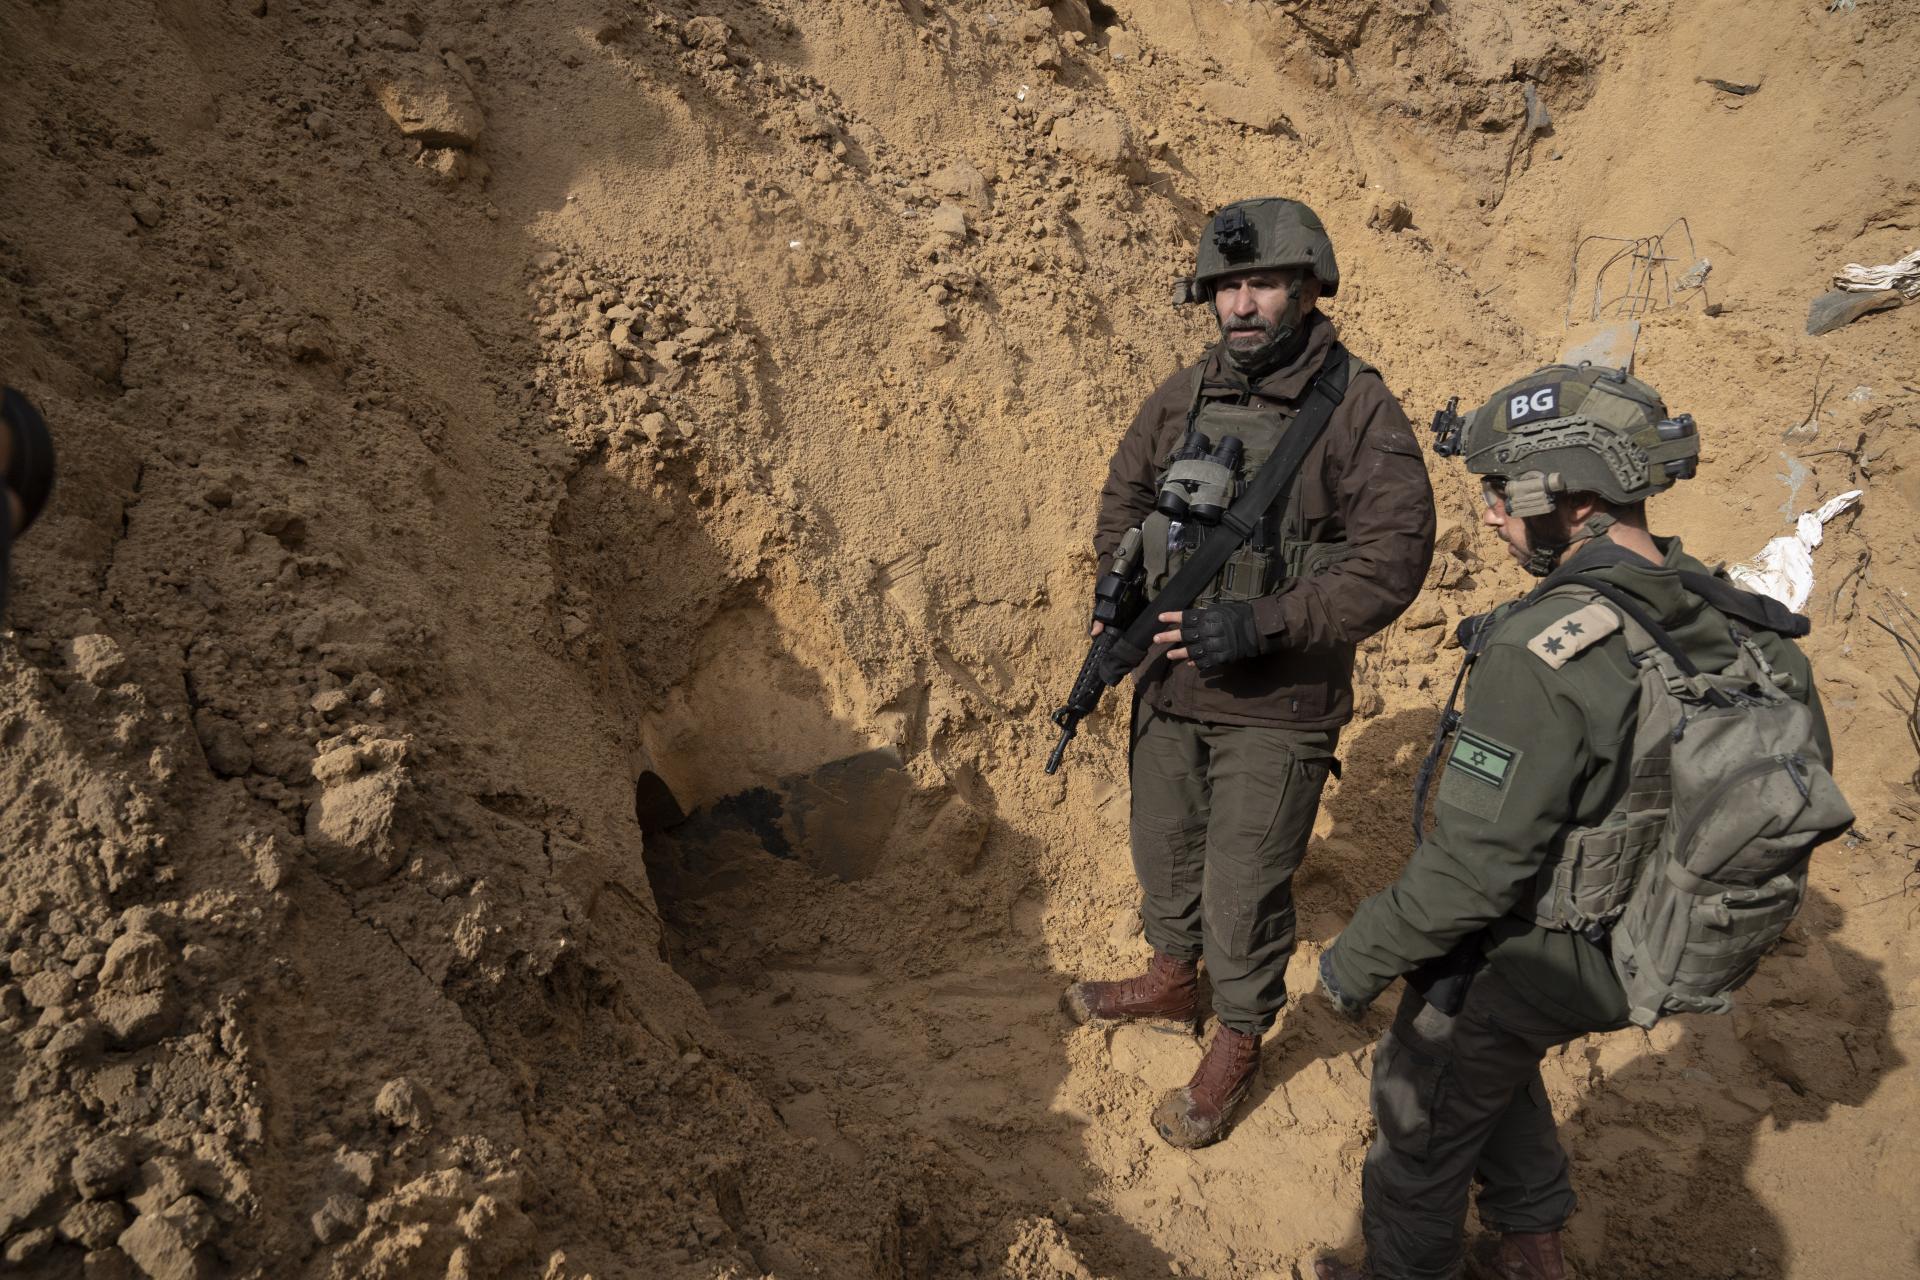 Ide o neutralizáciu hrozby. Izraelská armáda zatápa tunely Hamasu, aby zastavila útoky